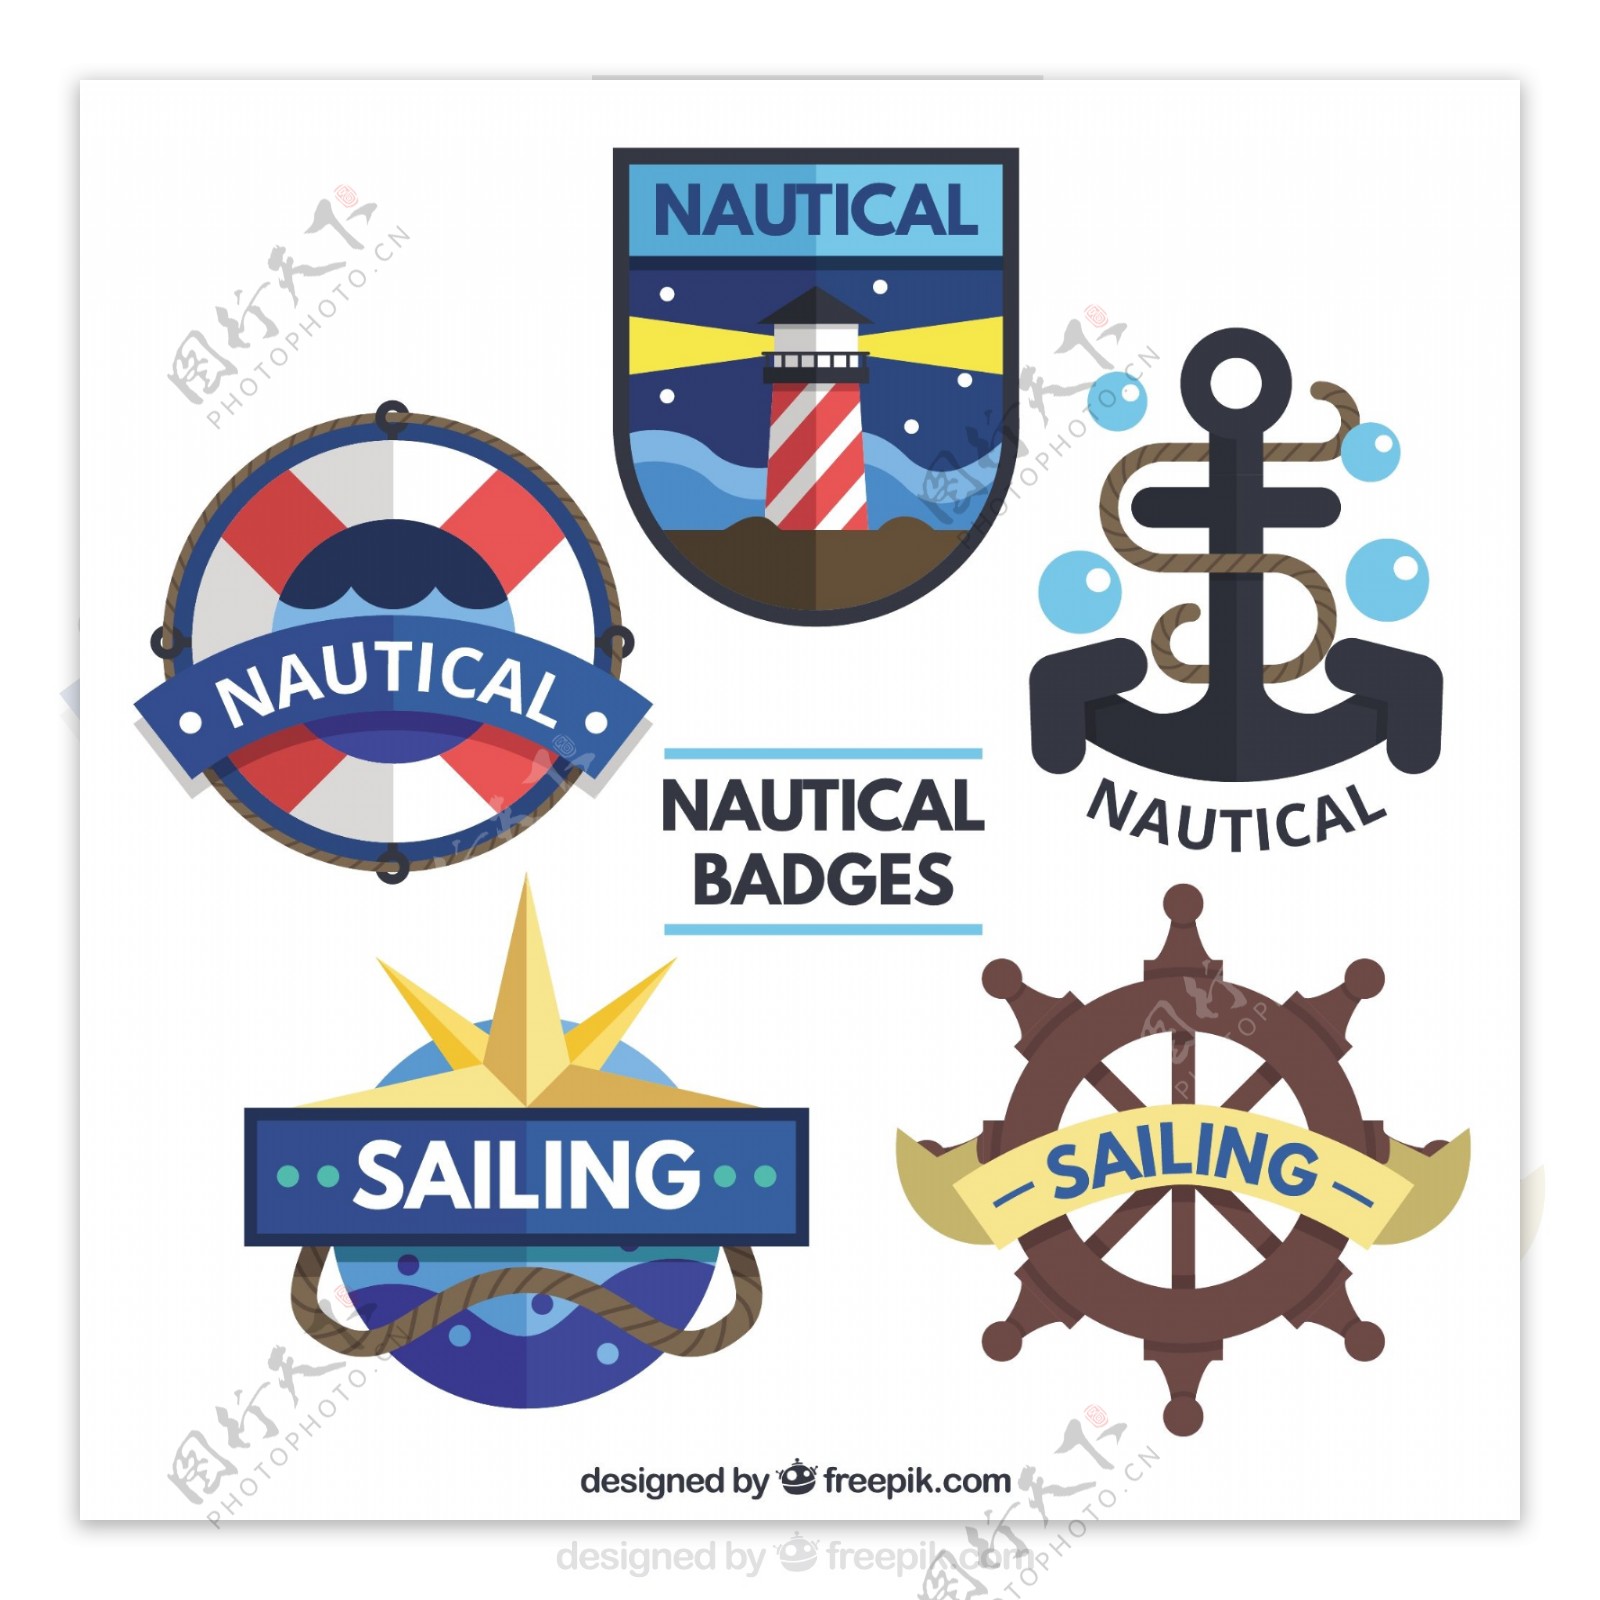 有元素的平板航海徽章